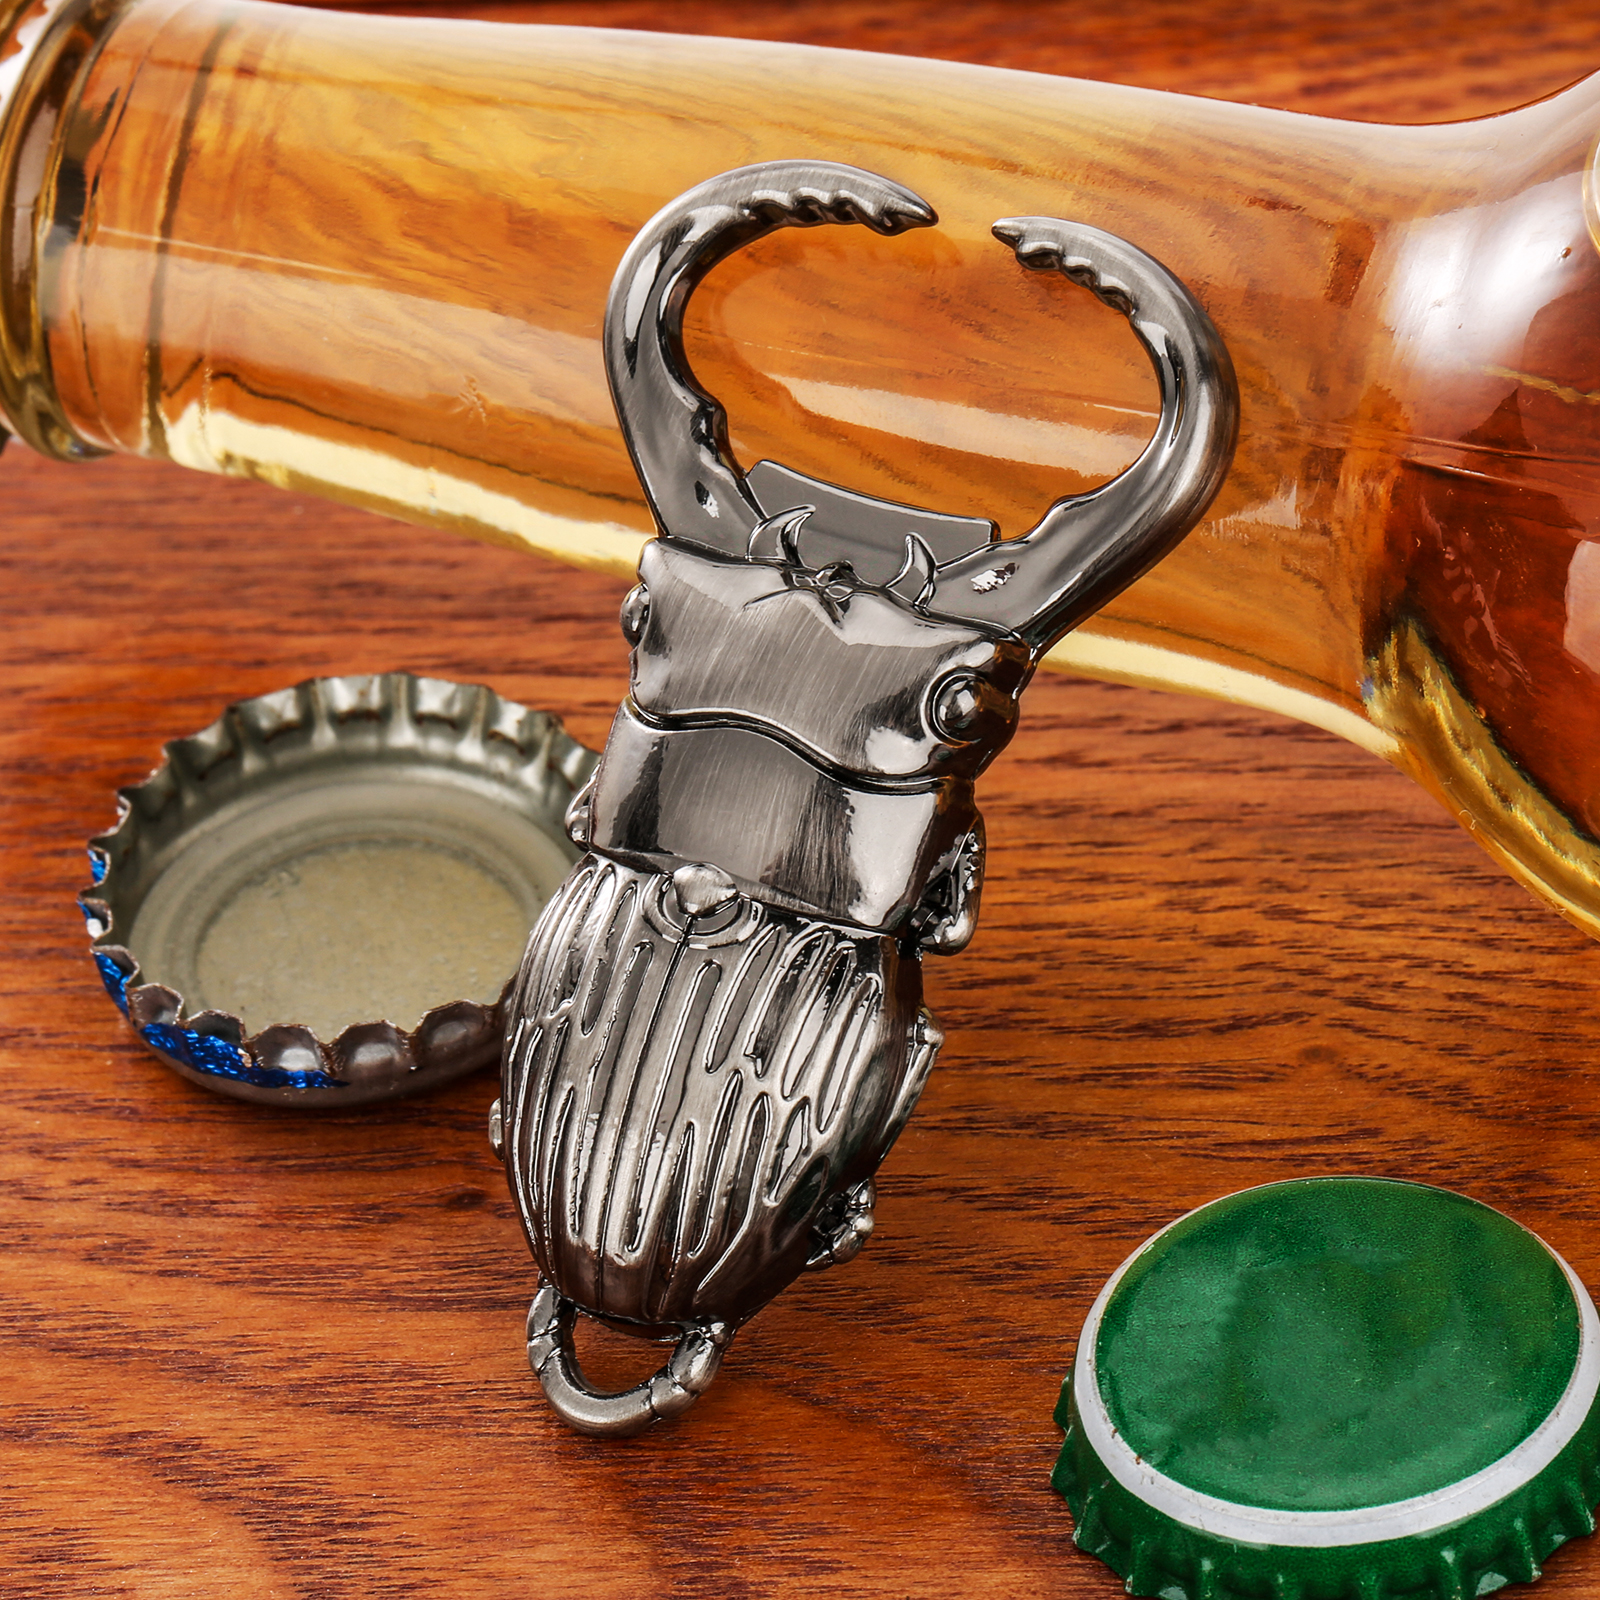 Lkkcher chrząszcz kształt design piwo otwieracz do butelki piwo